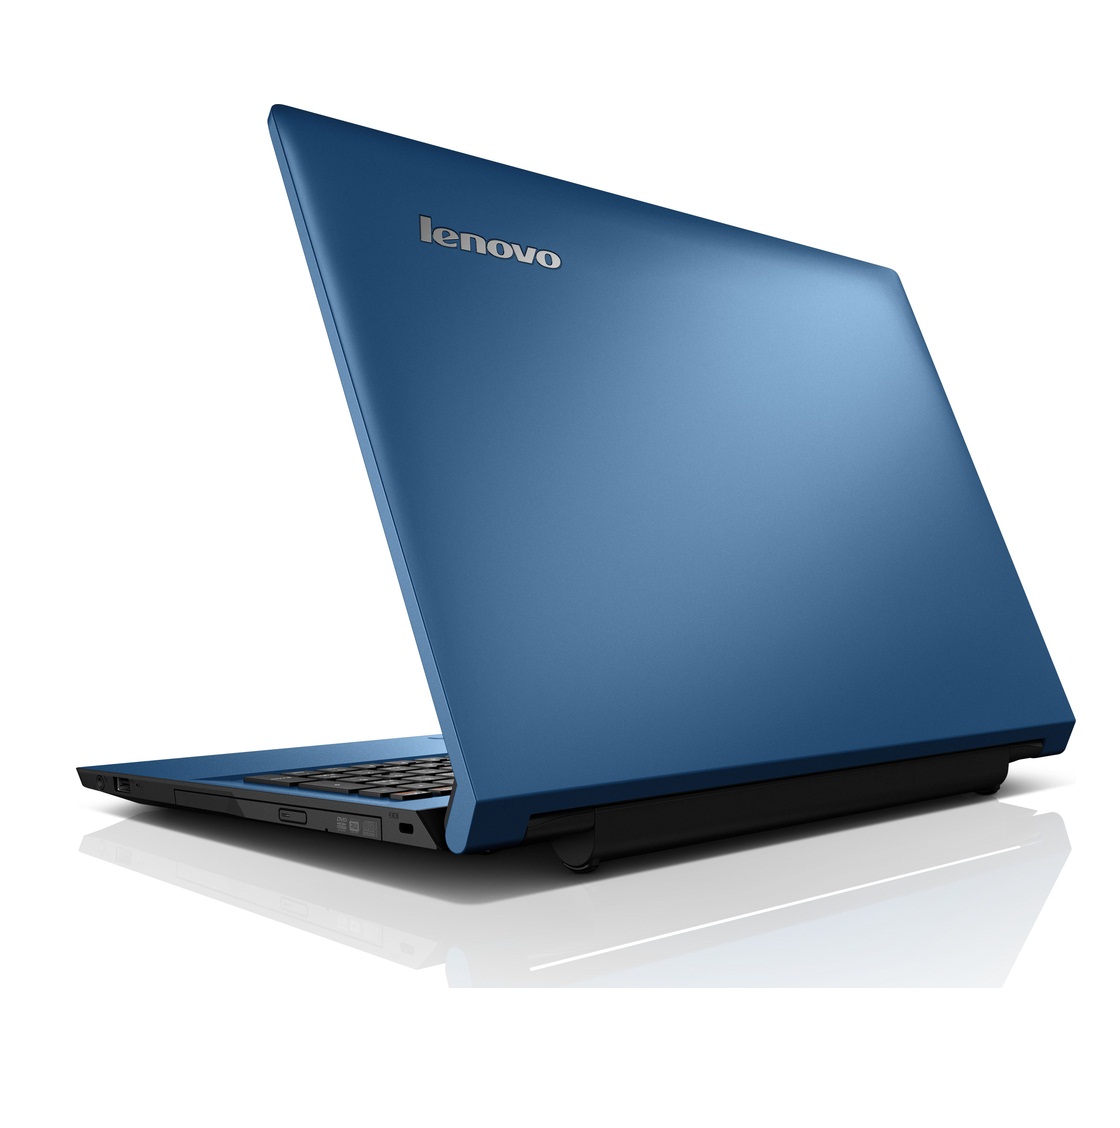 Máy tính xách tay Lenovo Ideapad 305 80NJ007CVN (Blue)- Bảo hành vàng 1 năm quốc tế